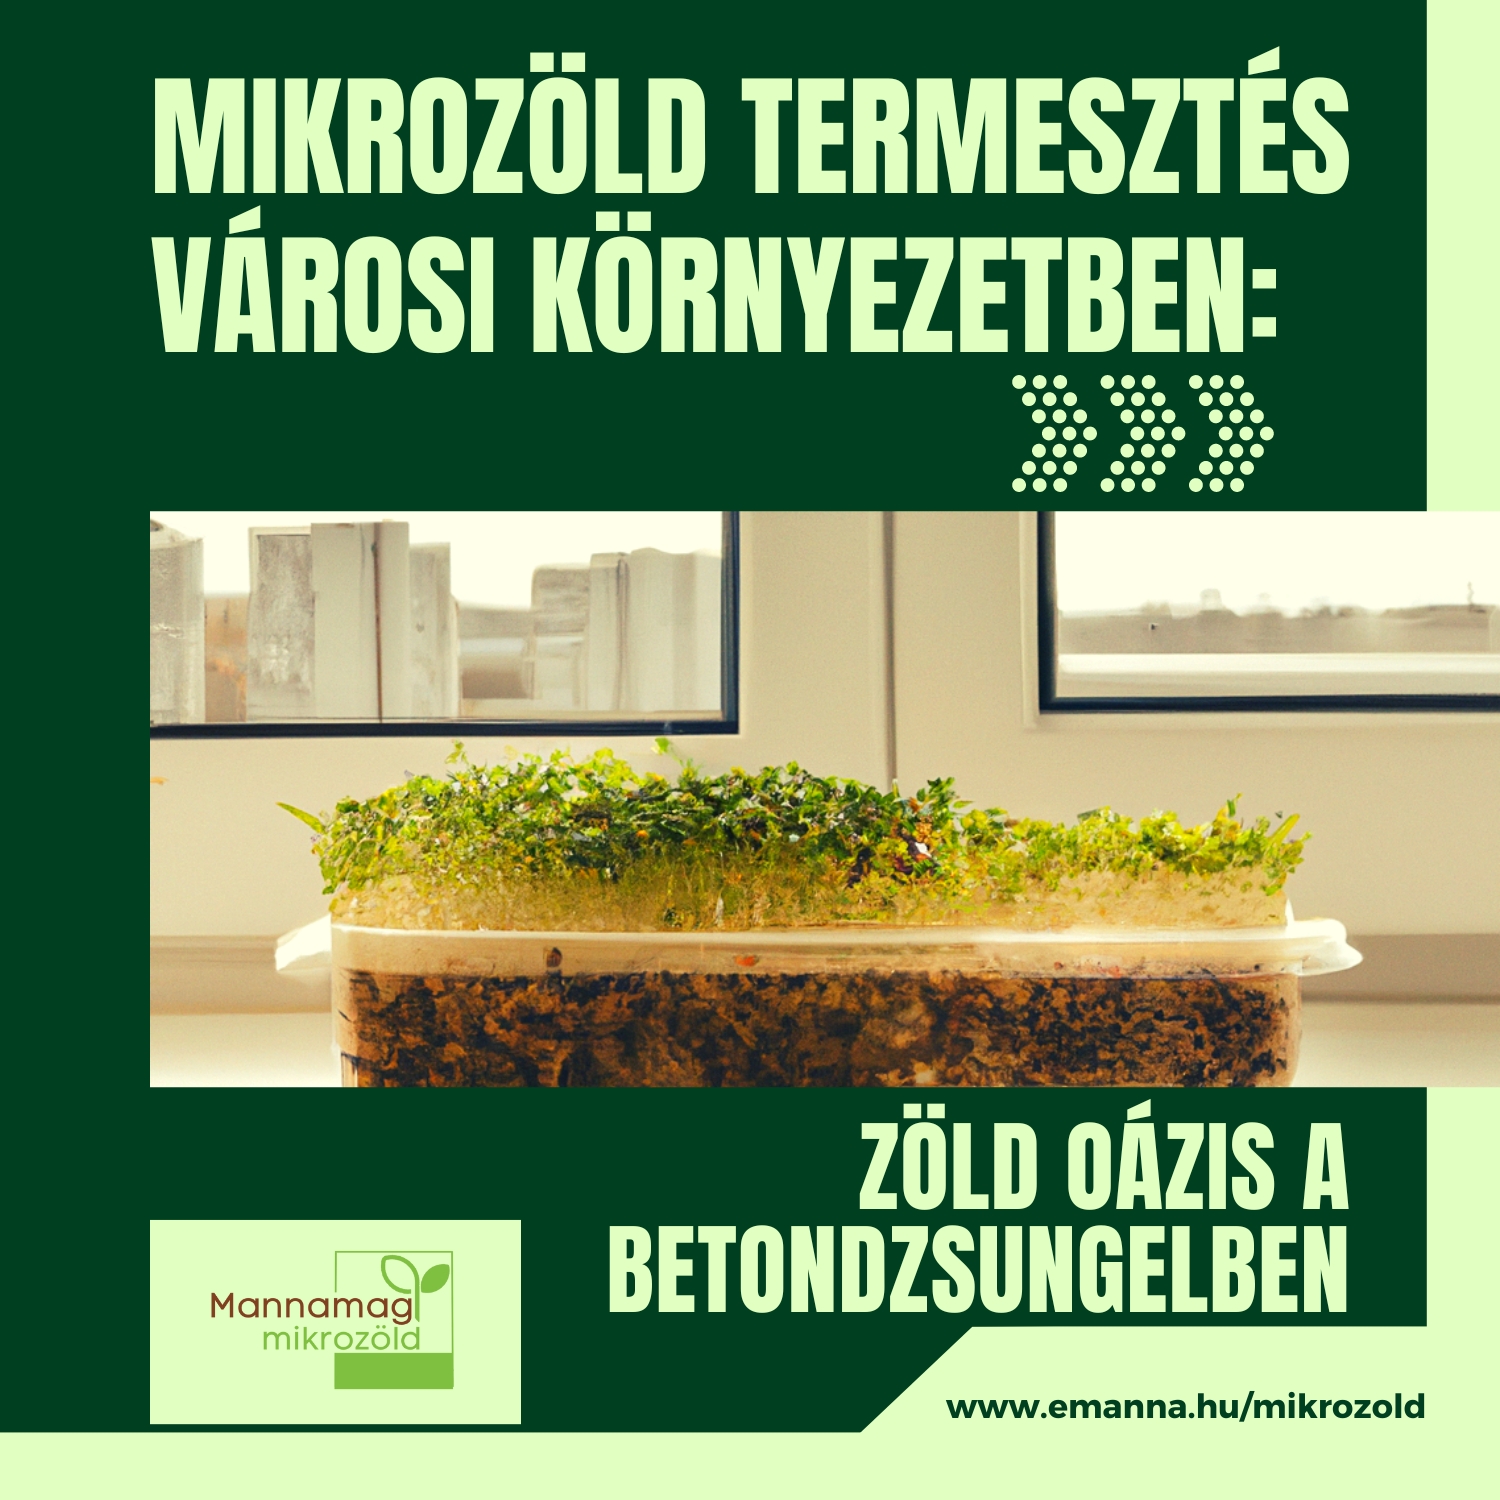 Mikrozöld termesztés városi környezetben: Zöld oázis a betondzsungelben